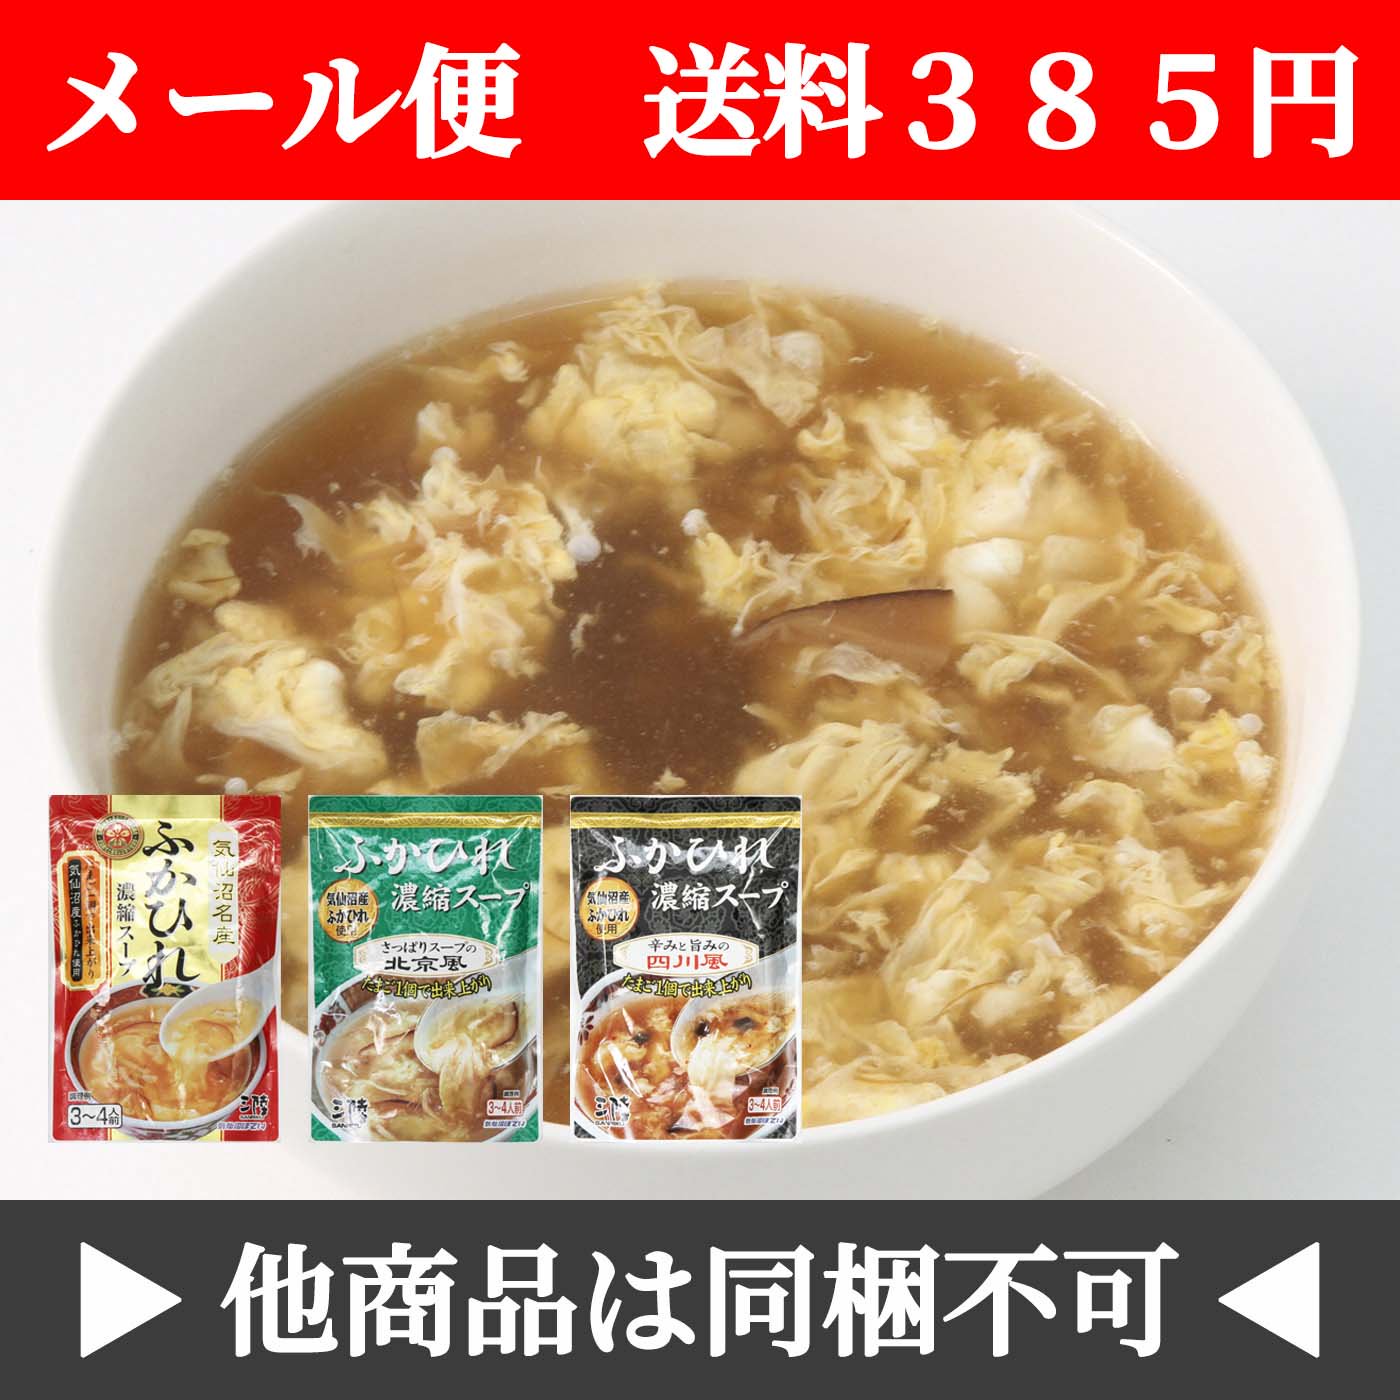 【メール便】ふかひれスープ 3袋セット